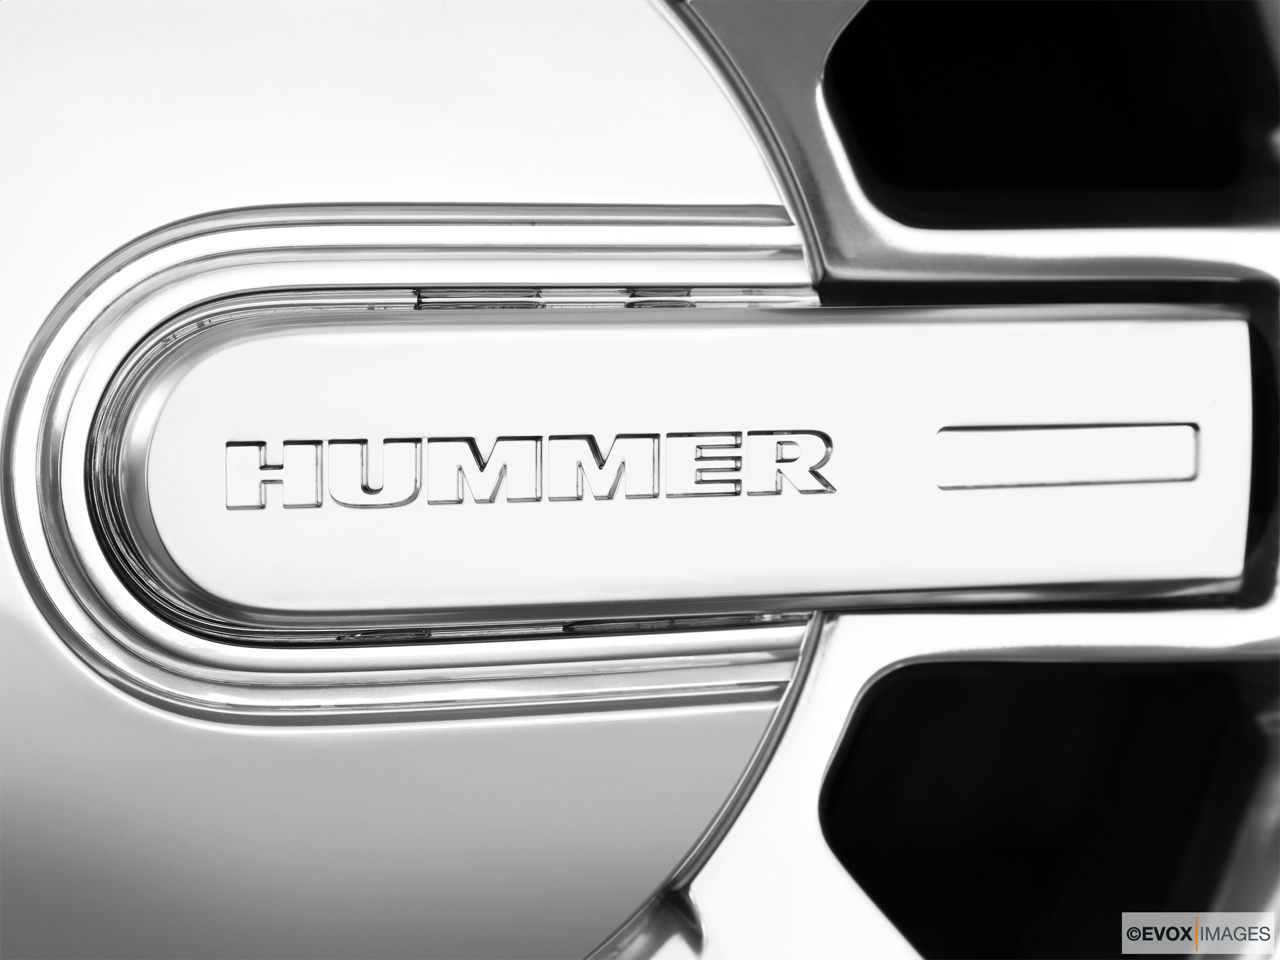 2010 Hummer H3 Base Rear manufacture badge/emblem 